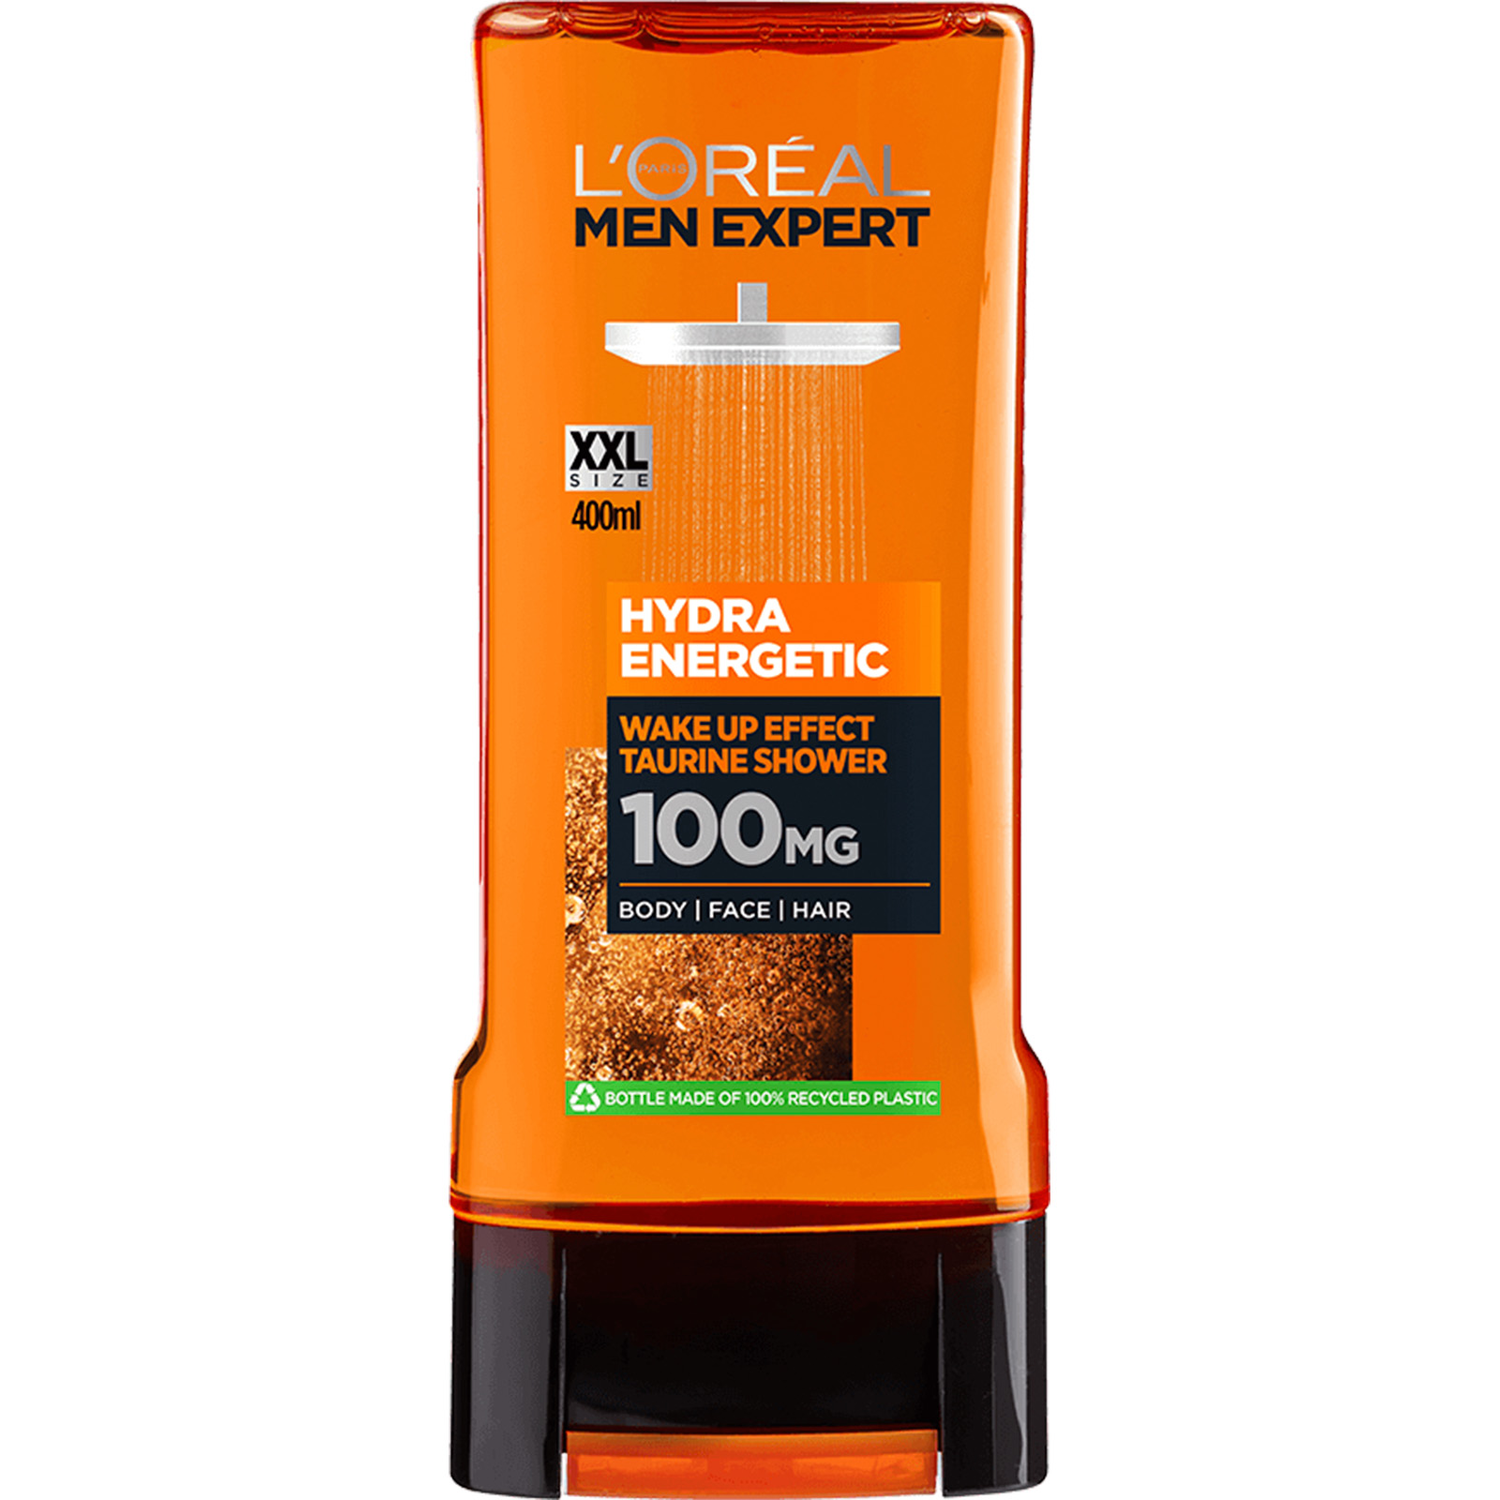 Men Expert Hydra Energetic Shower Gel 400ml - Orange Image